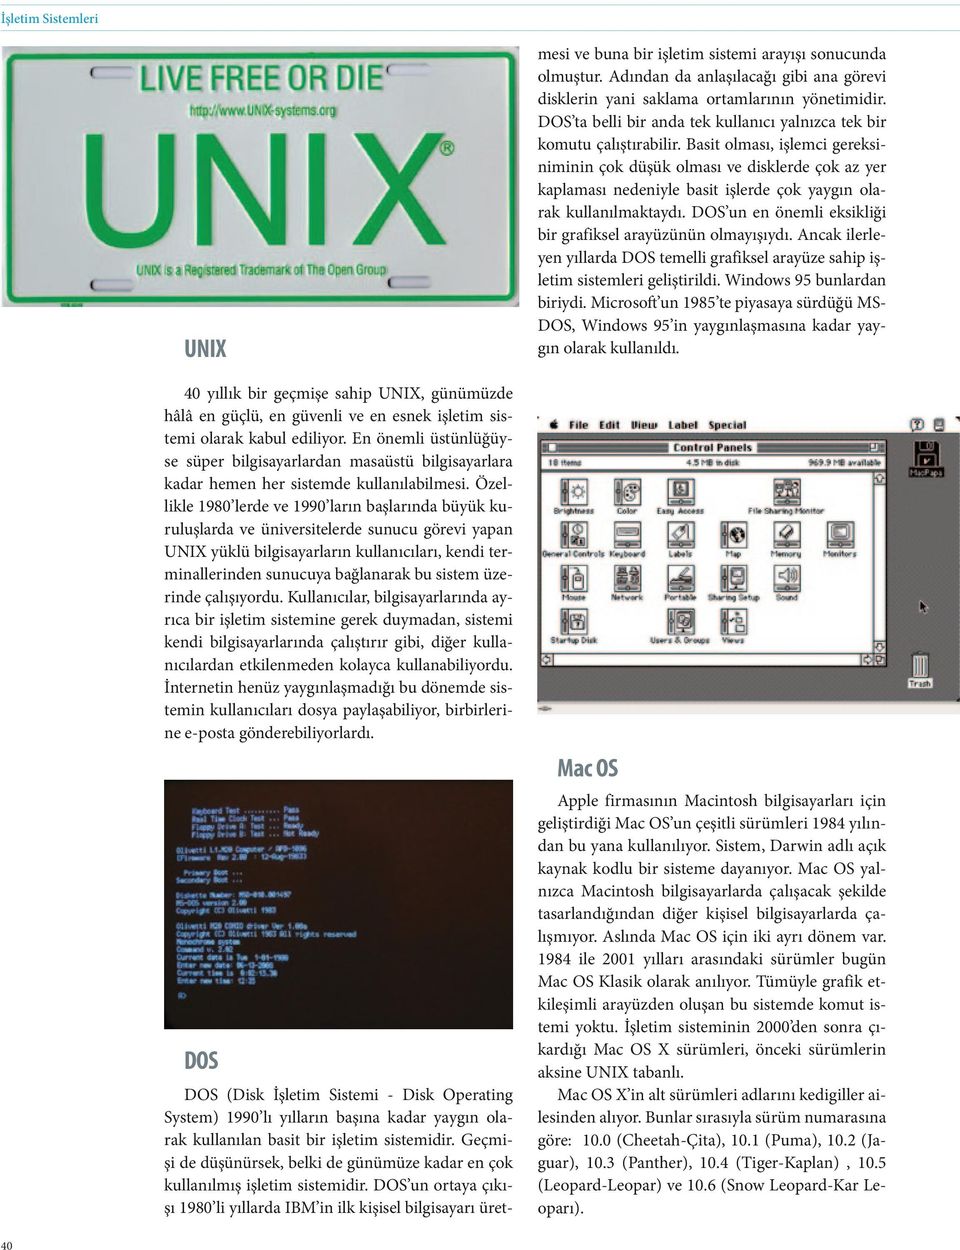 Özellikle 1980 lerde ve 1990 ların başlarında büyük kuruluşlarda ve üniversitelerde sunucu görevi yapan UNIX yüklü bilgisayarların kullanıcıları, kendi terminallerinden sunucuya bağlanarak bu sistem